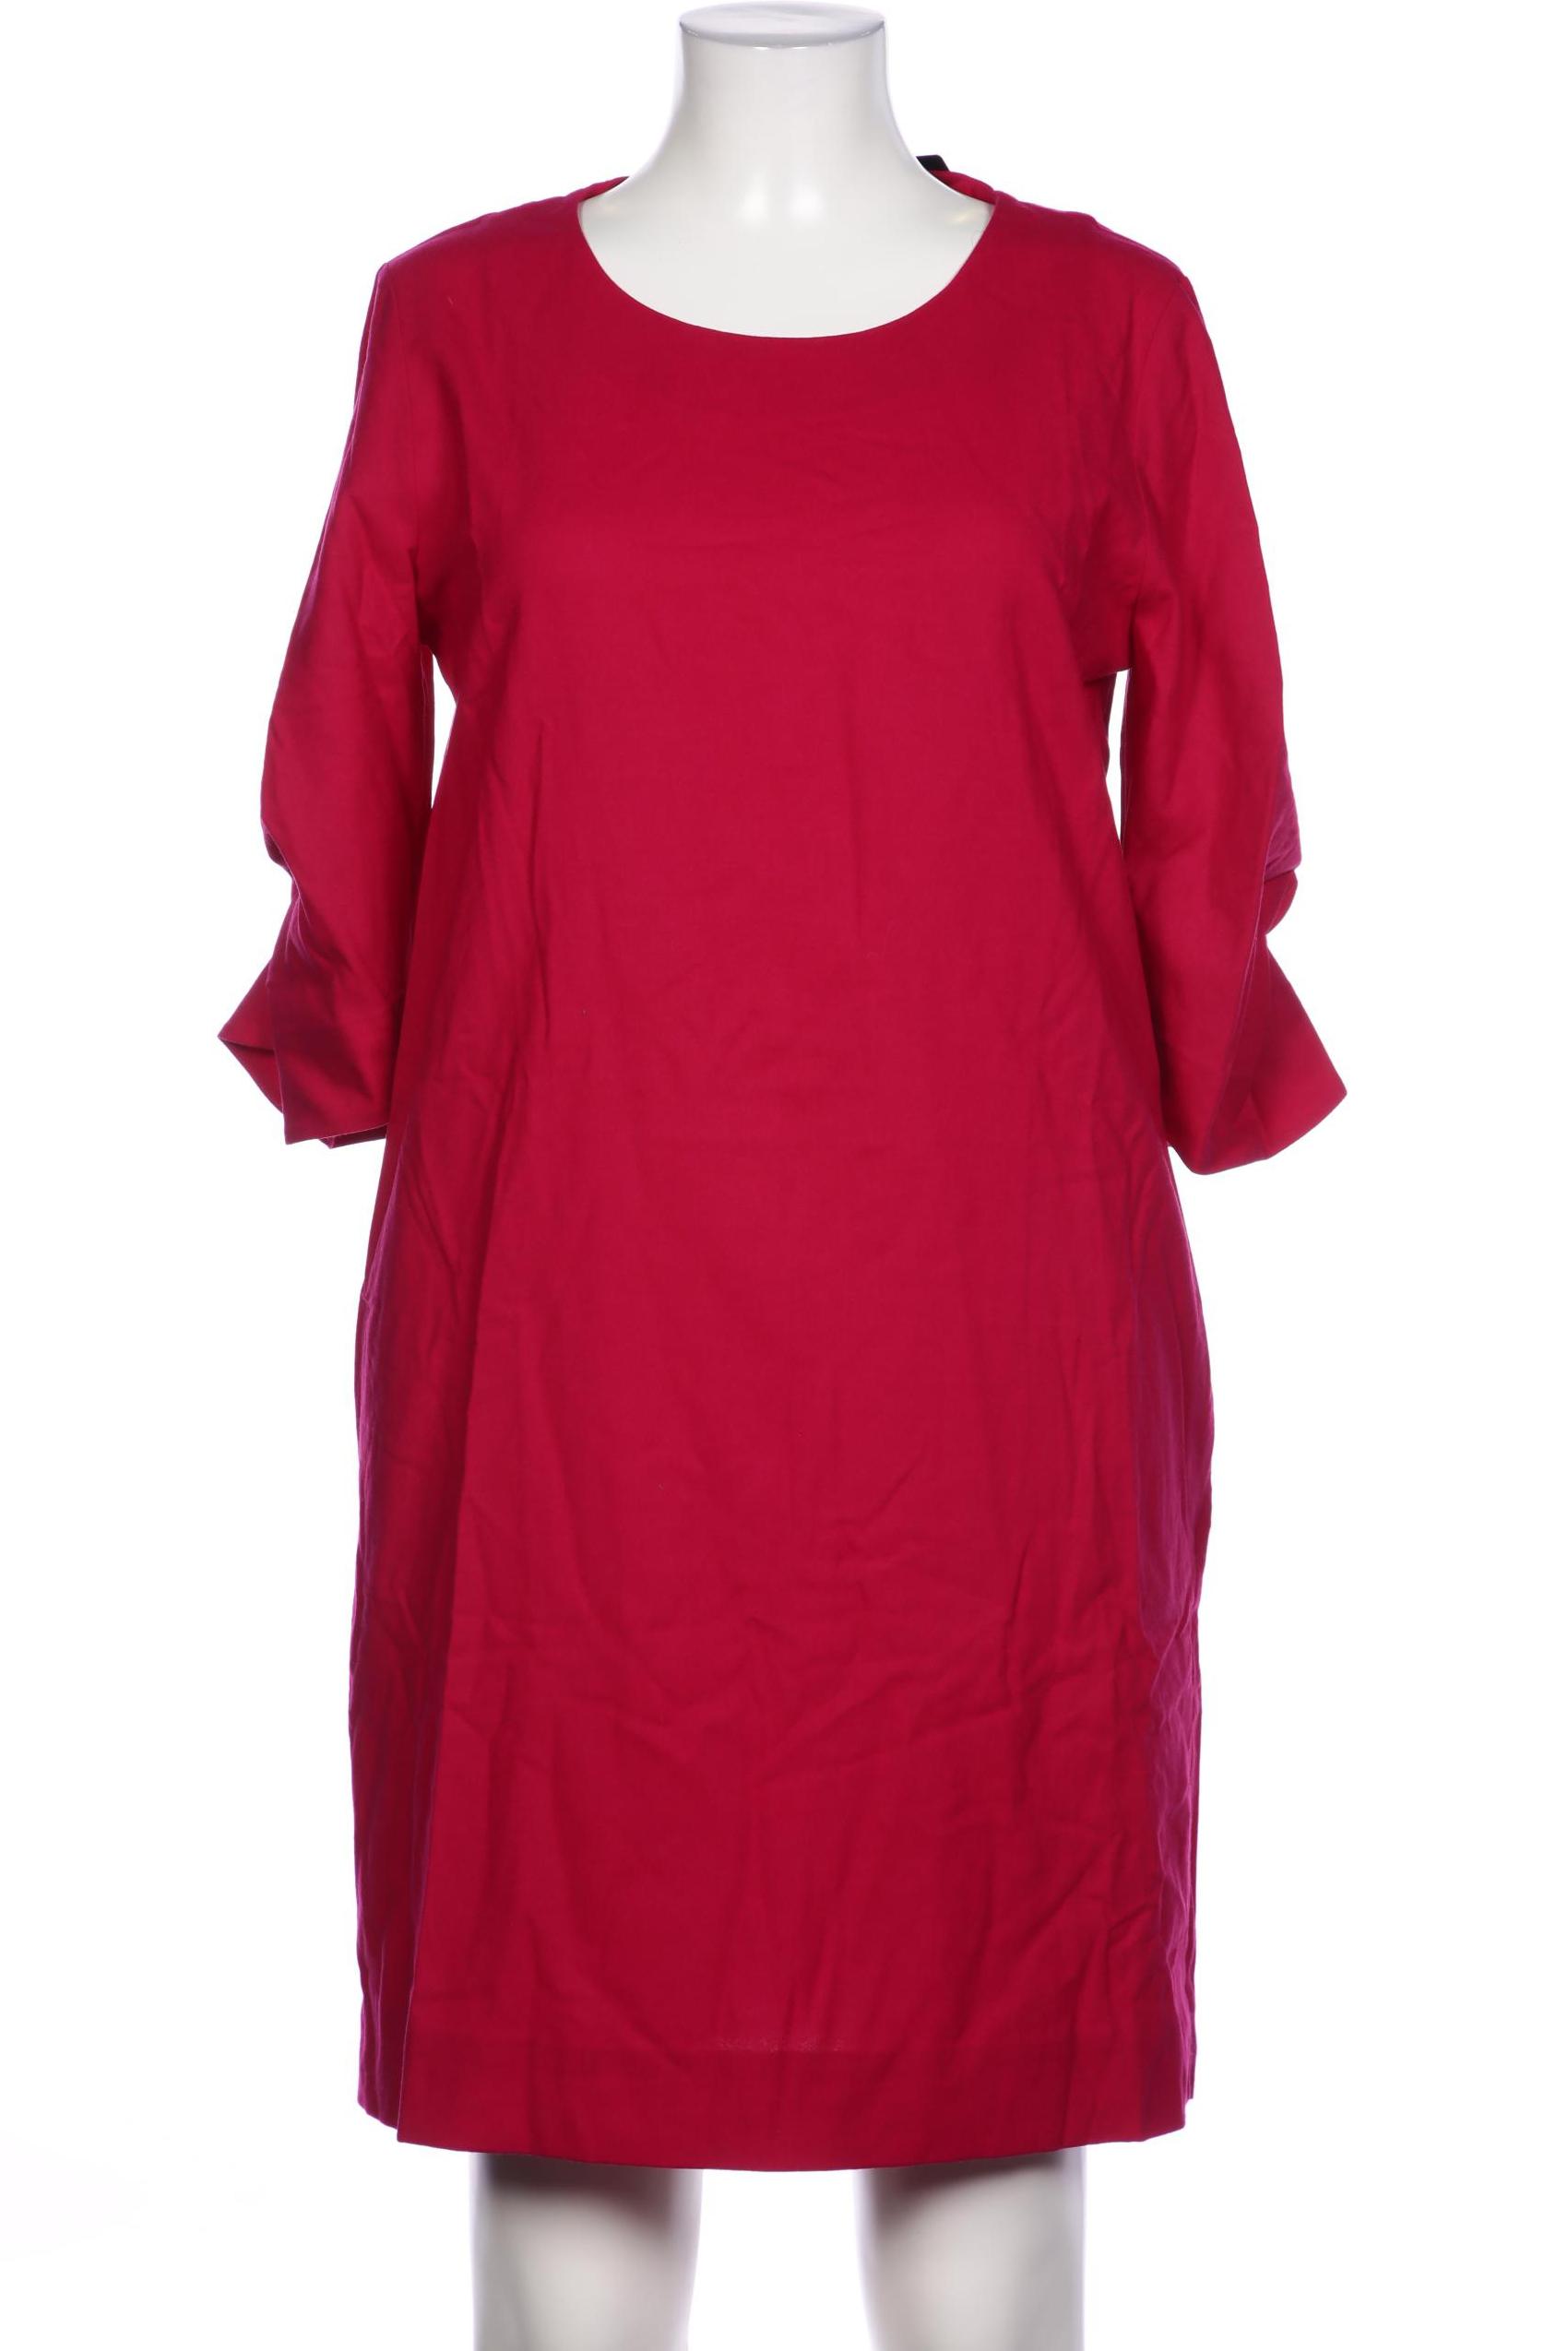 COS Damen Kleid, pink, Gr. 42 von COS